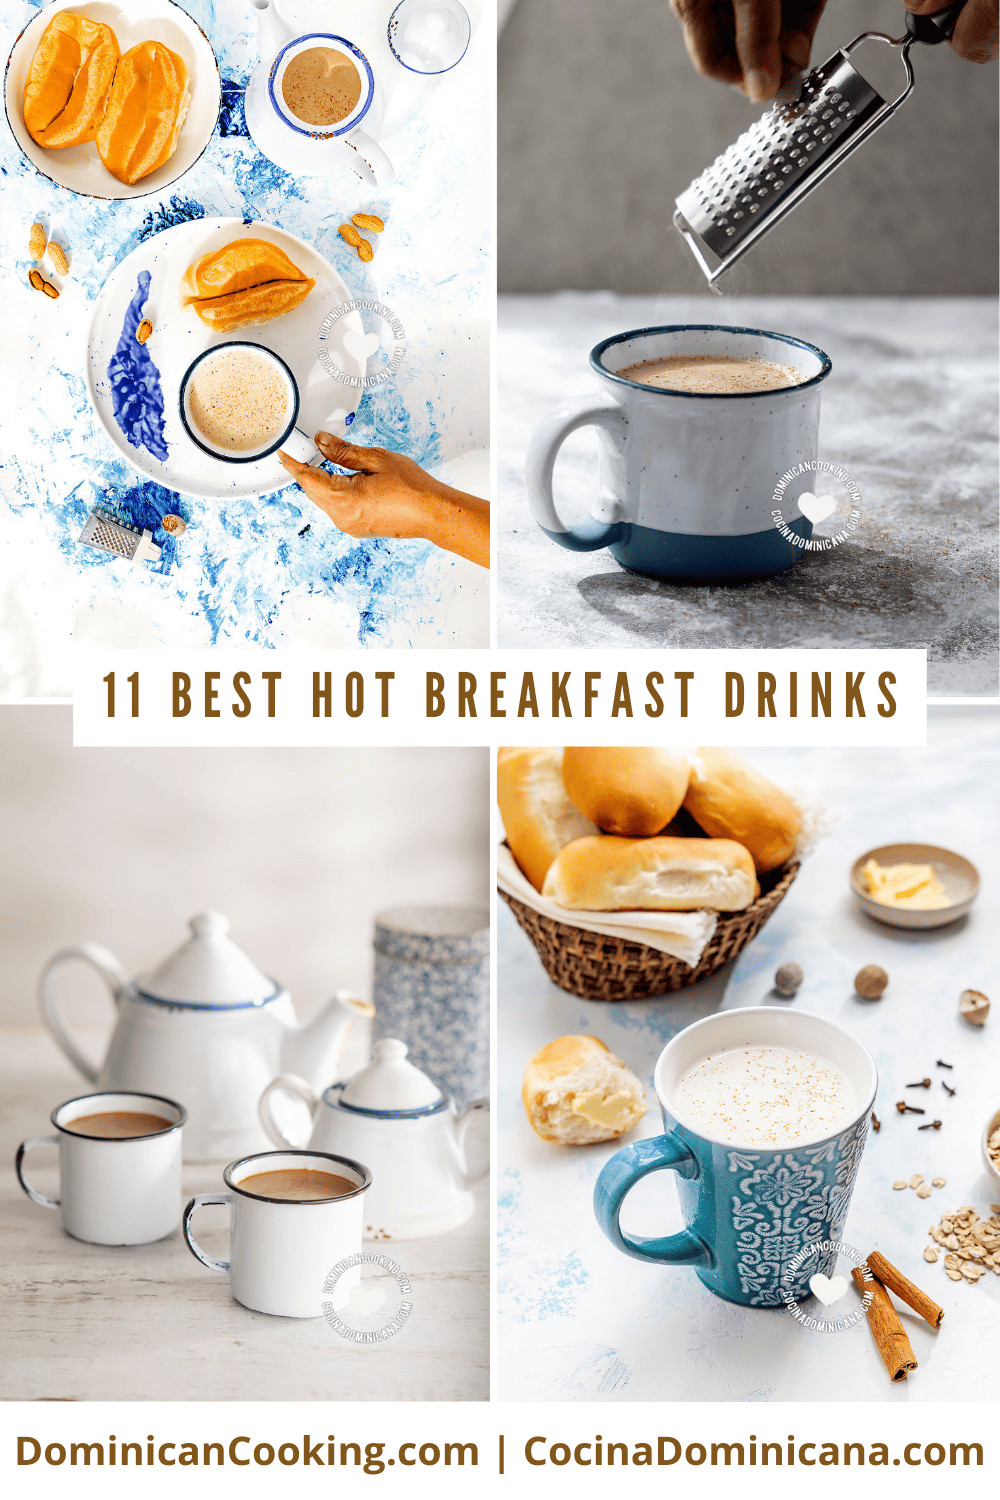 Hot breakfast drinks recipes.